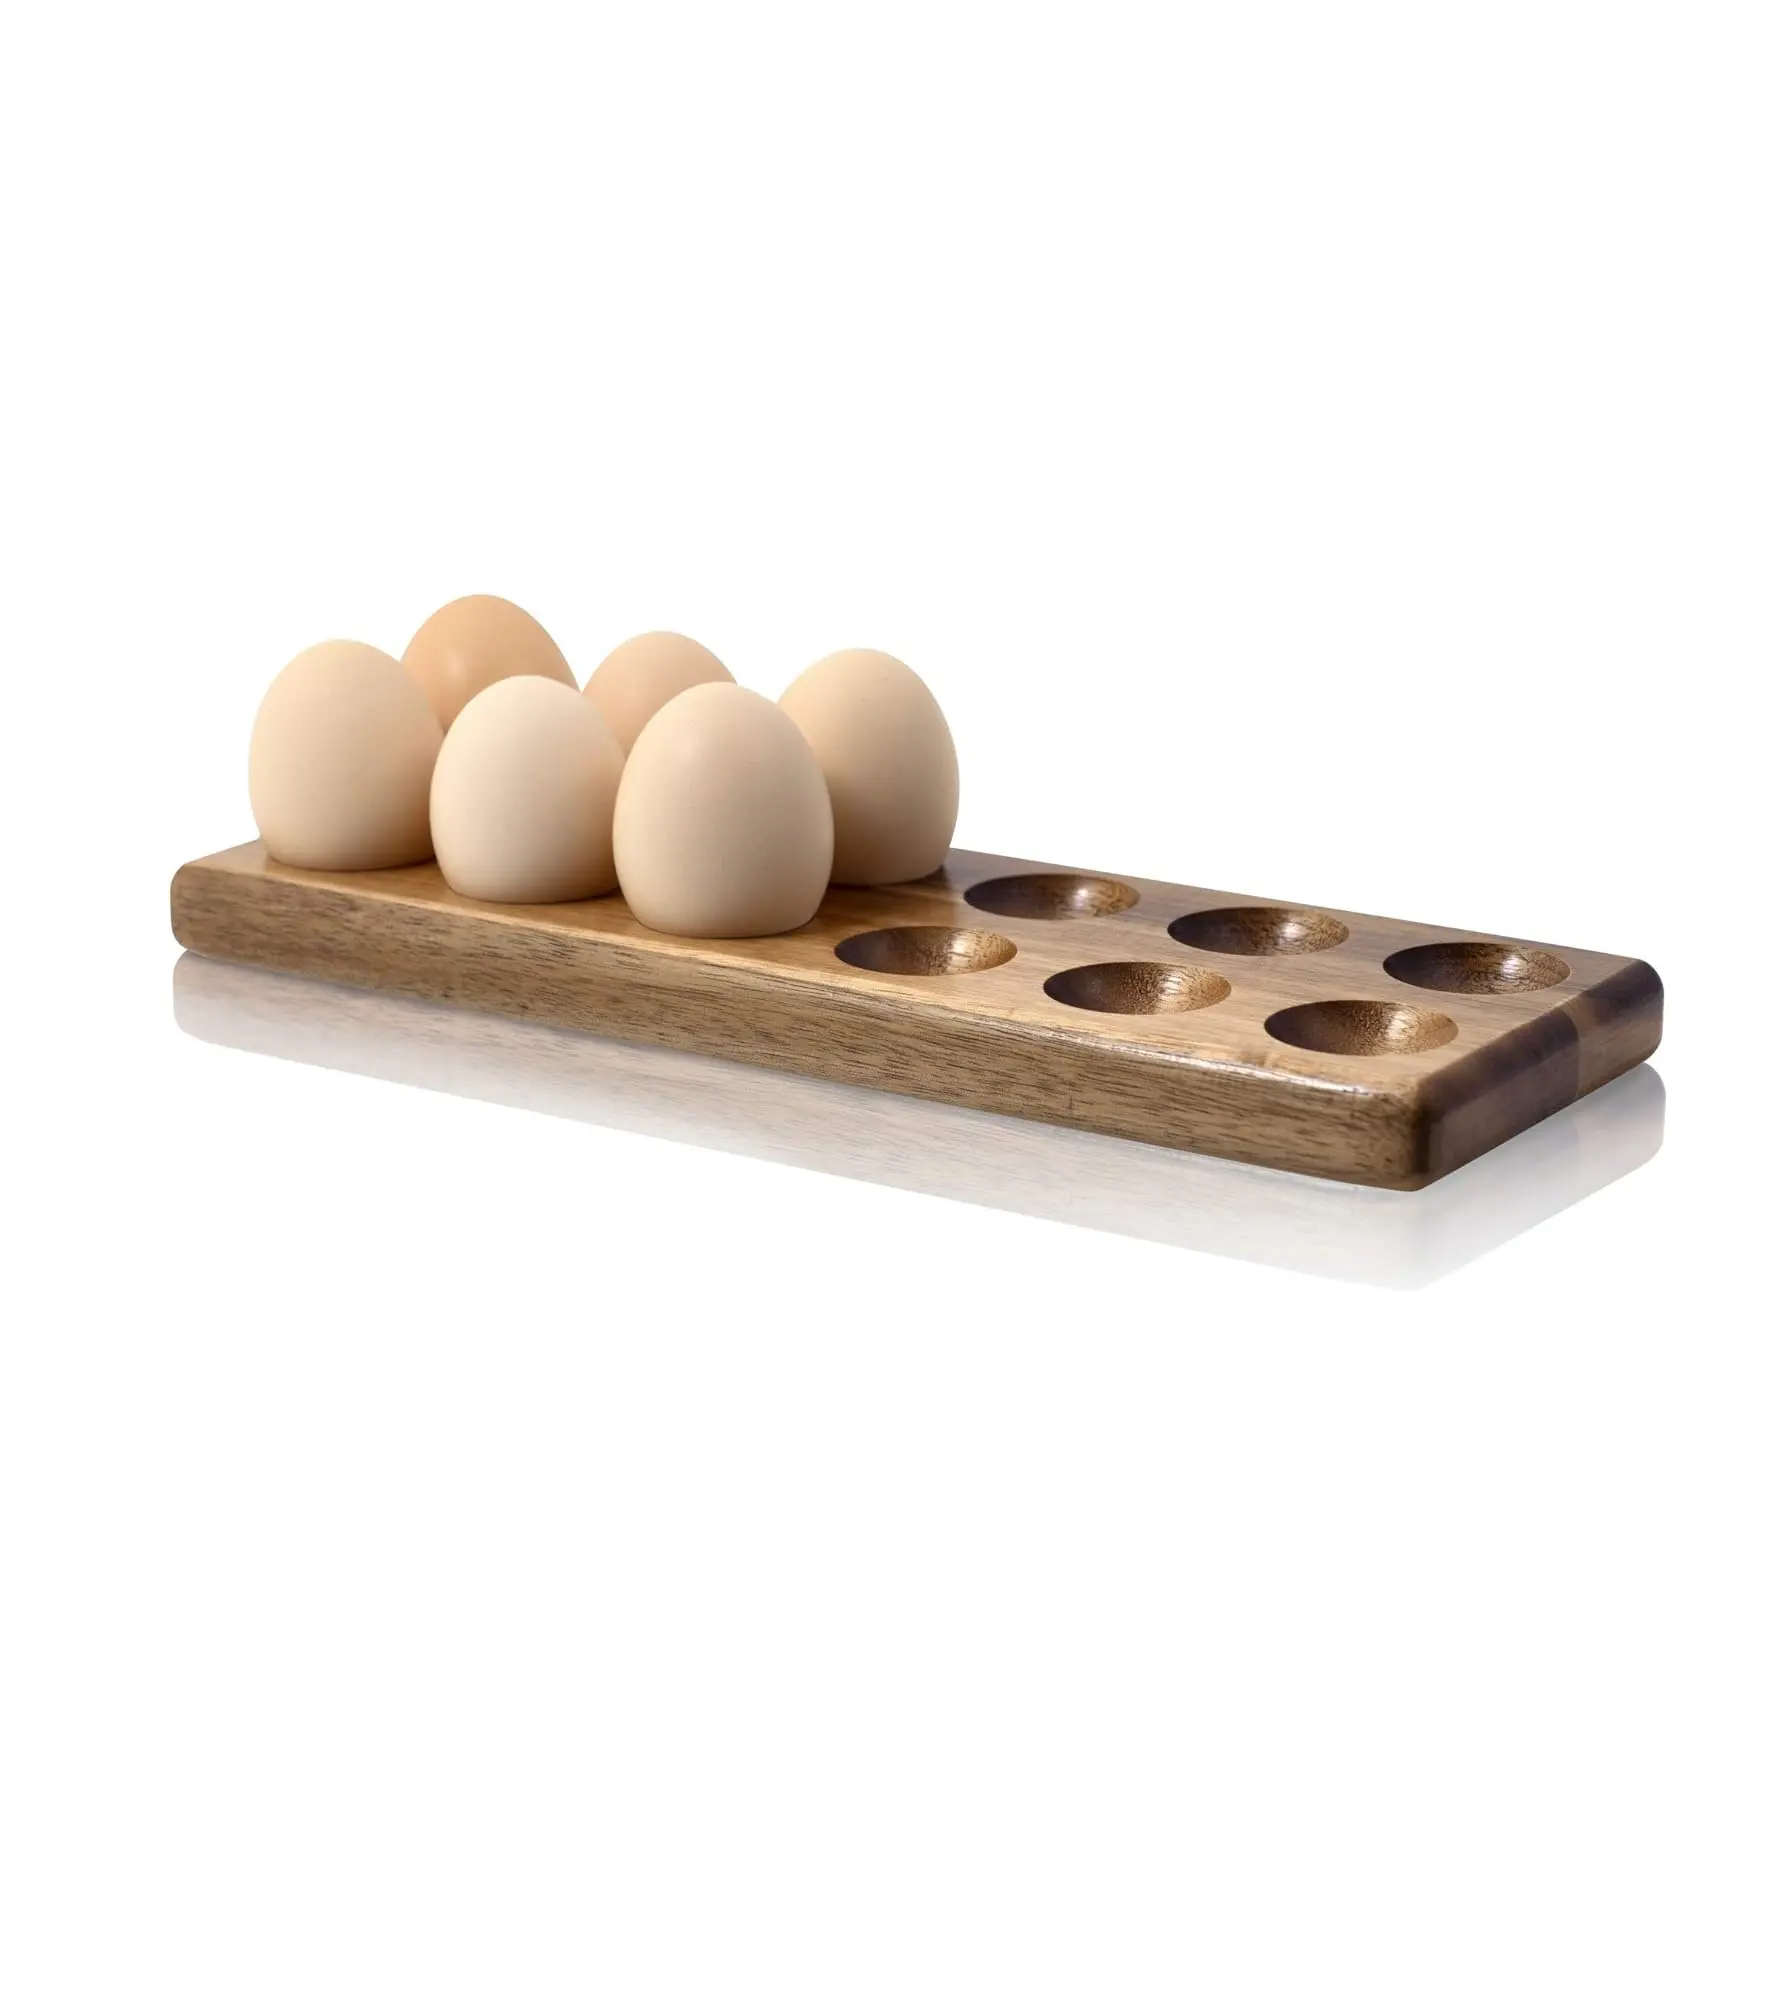 Porta-ovos de galinha rústico e bandeja para bancada ou acampamento (12 porta-ovos para geladeira)